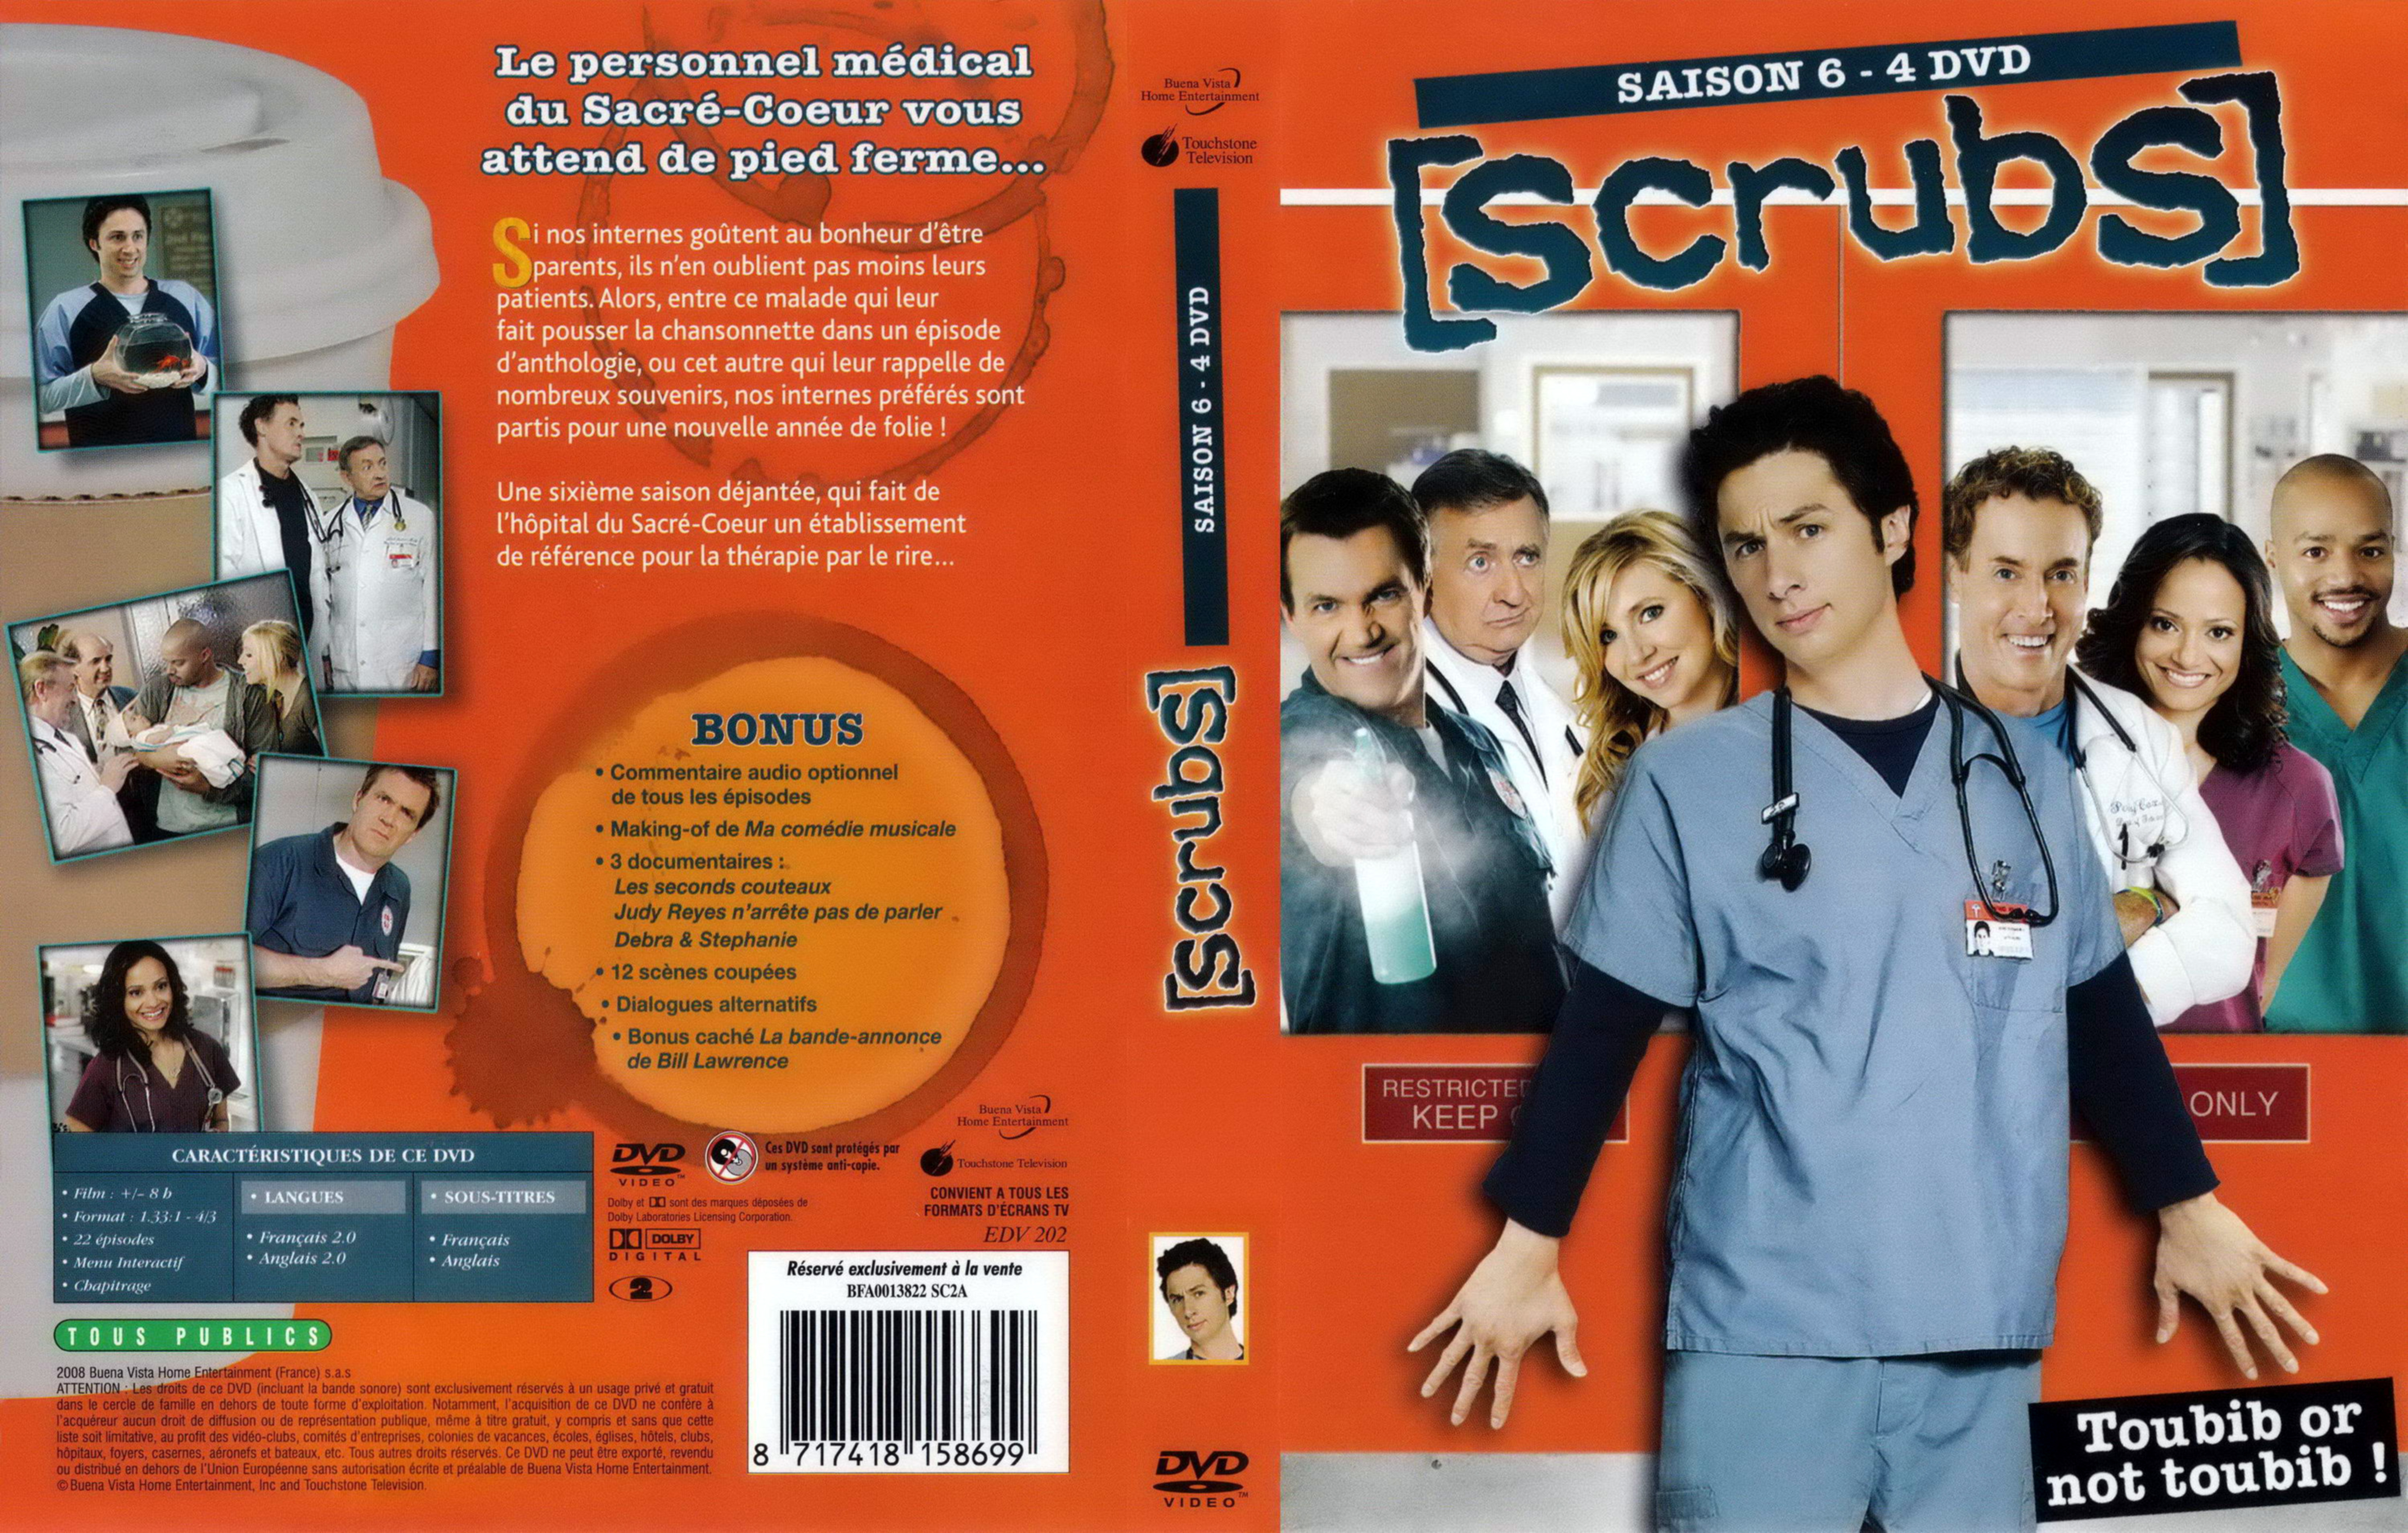 Jaquette DVD Scrubs saison 6 COFFRET